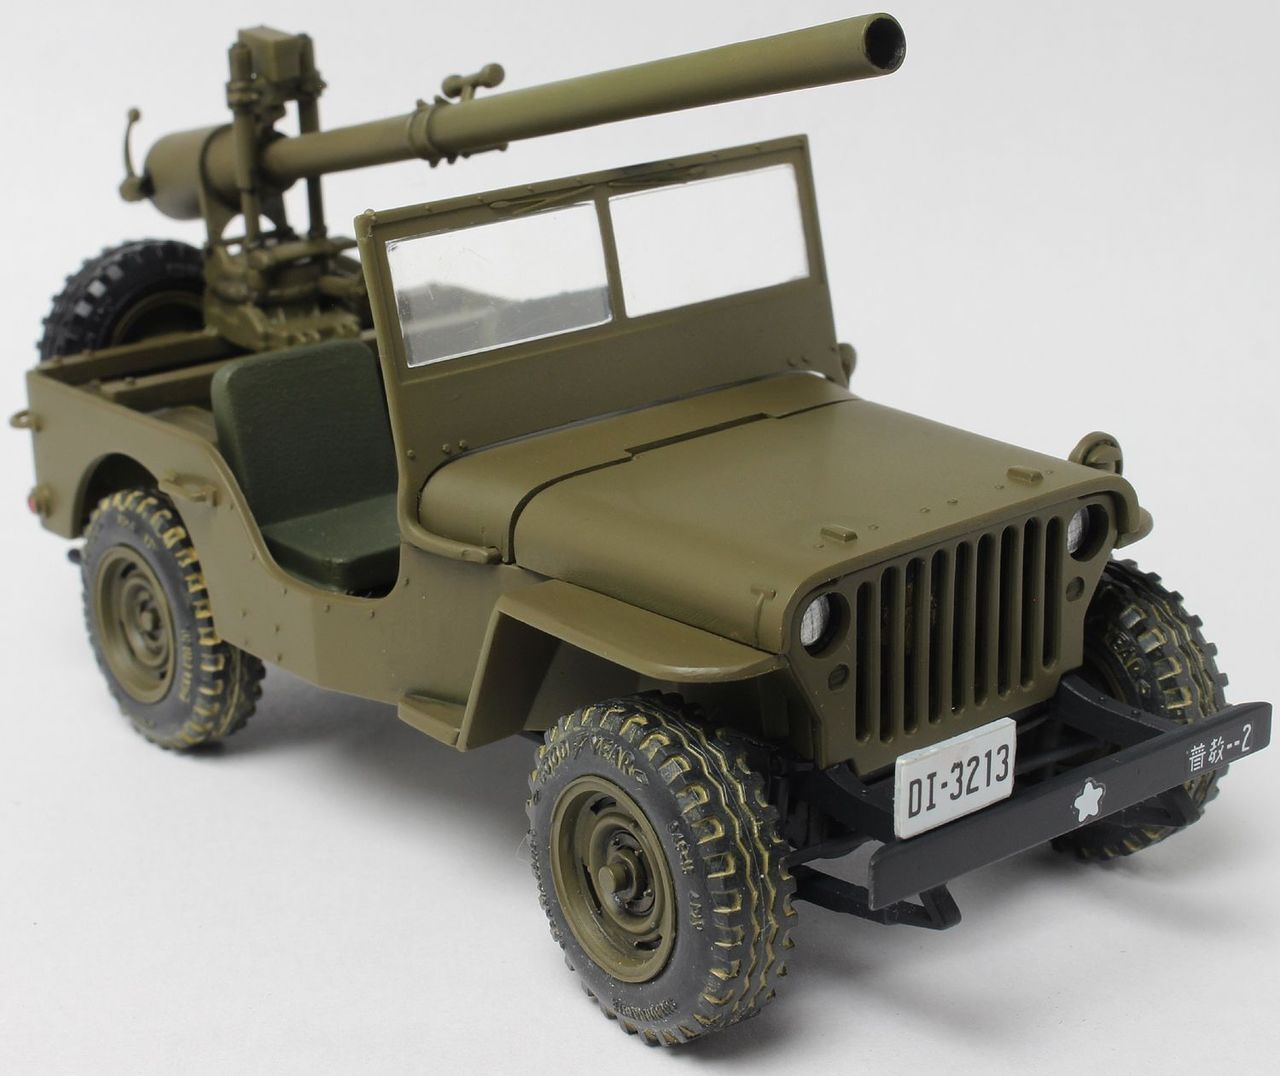 882 1/25 Godzilla Army Jeep Plastic Model Kit